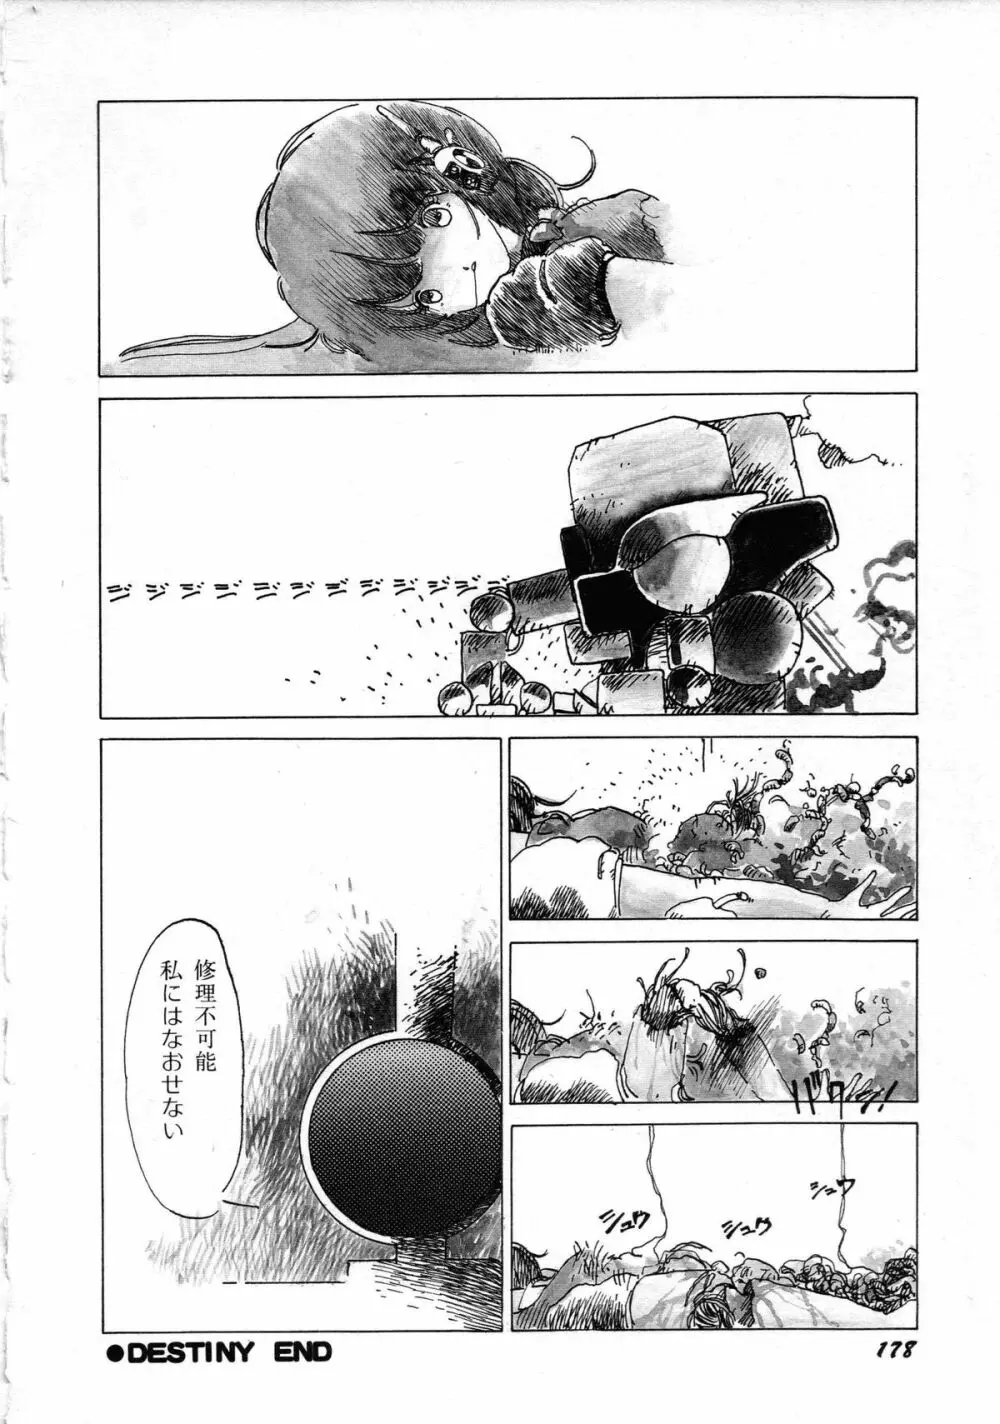 ロボット&美少女傑作選 レモン・ピープル1982-1986 182ページ